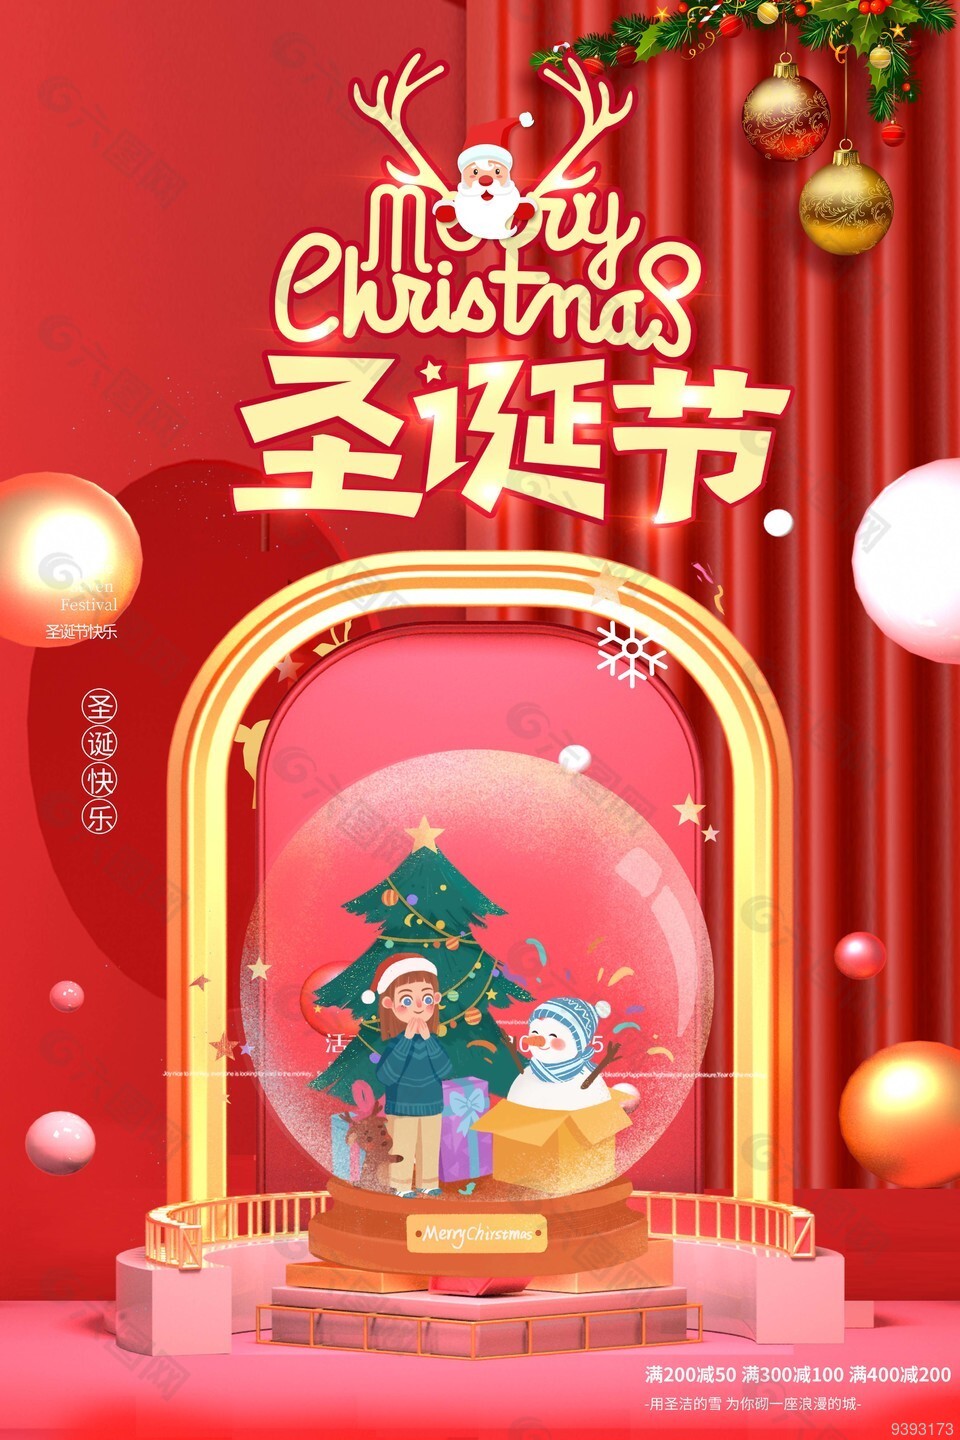 圣诞节水晶球满减活动海报设计